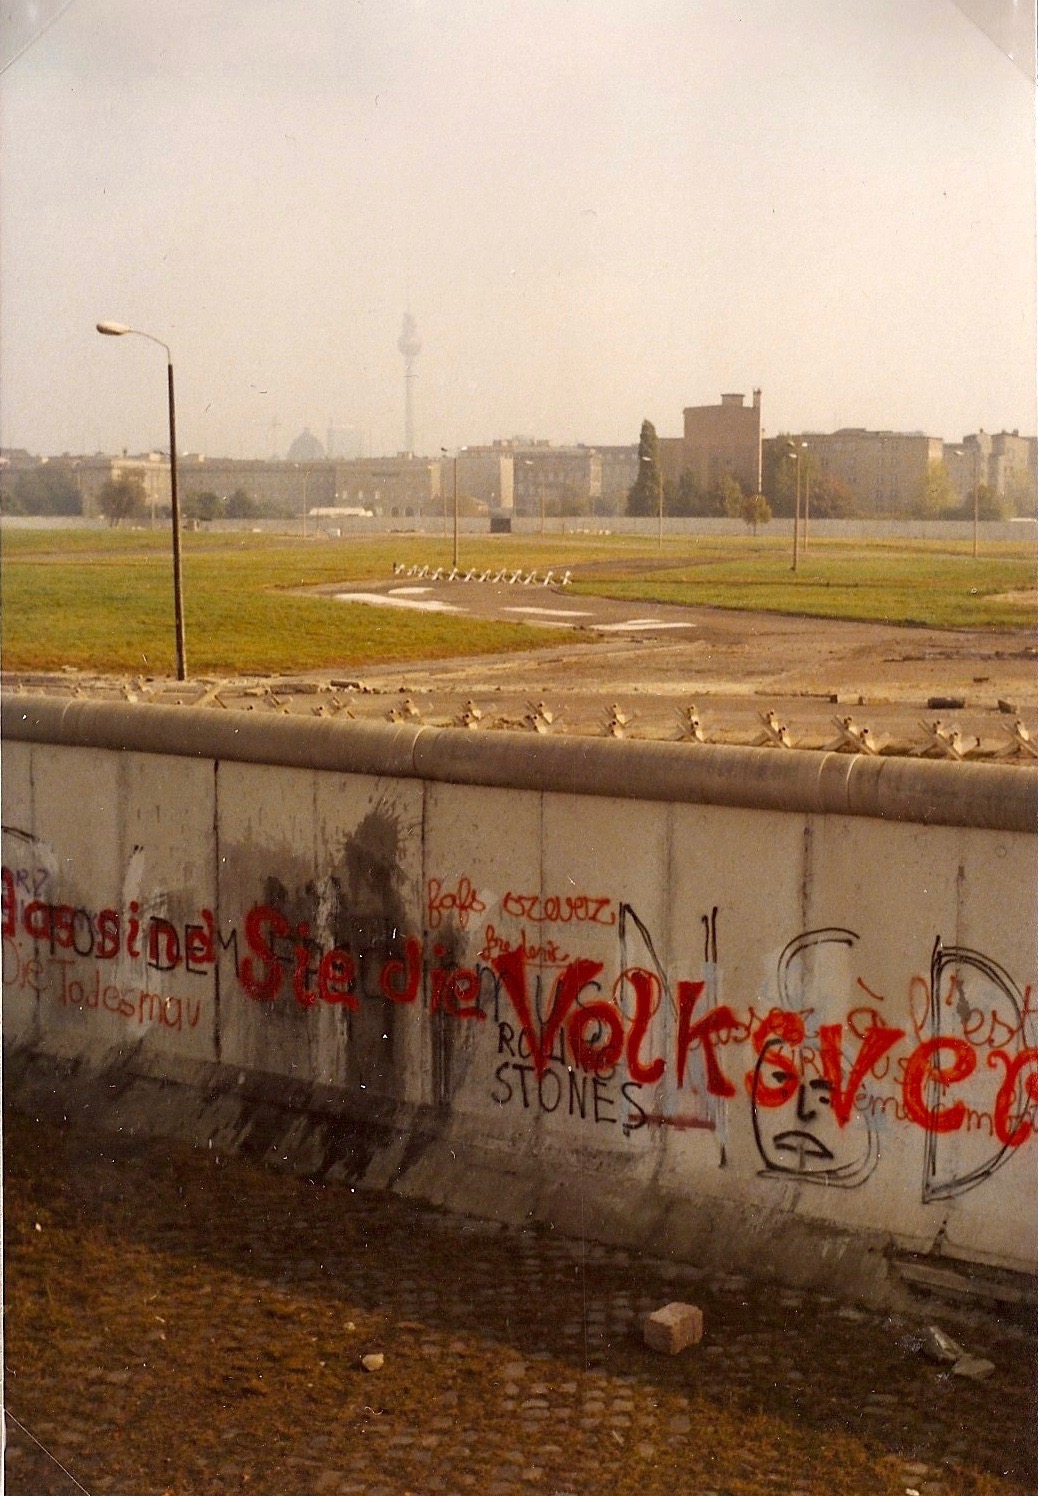 Berlin Wall, 1980